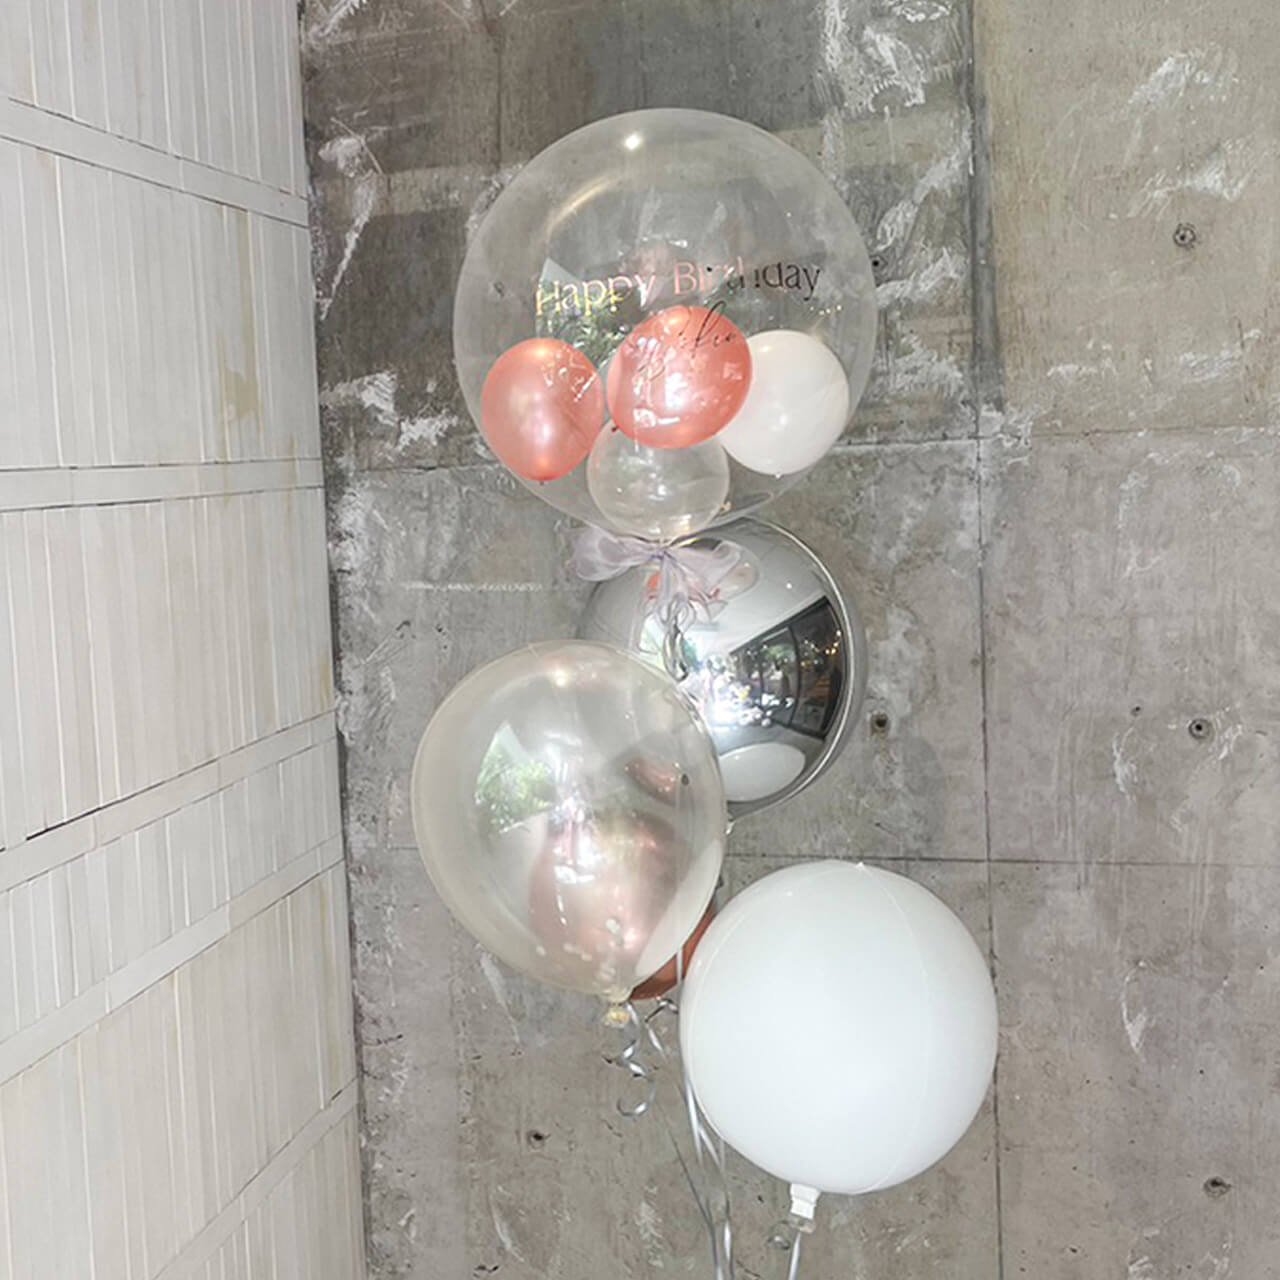 Siempre Float Balloon - Float type - シエンプレヘリウムバルーンギフト - チャビーバルーン 大阪 名古屋  滋賀にあるおしゃれなバルーン電報 バルーン装飾 バルーンギフトのことならチャビーバルーン